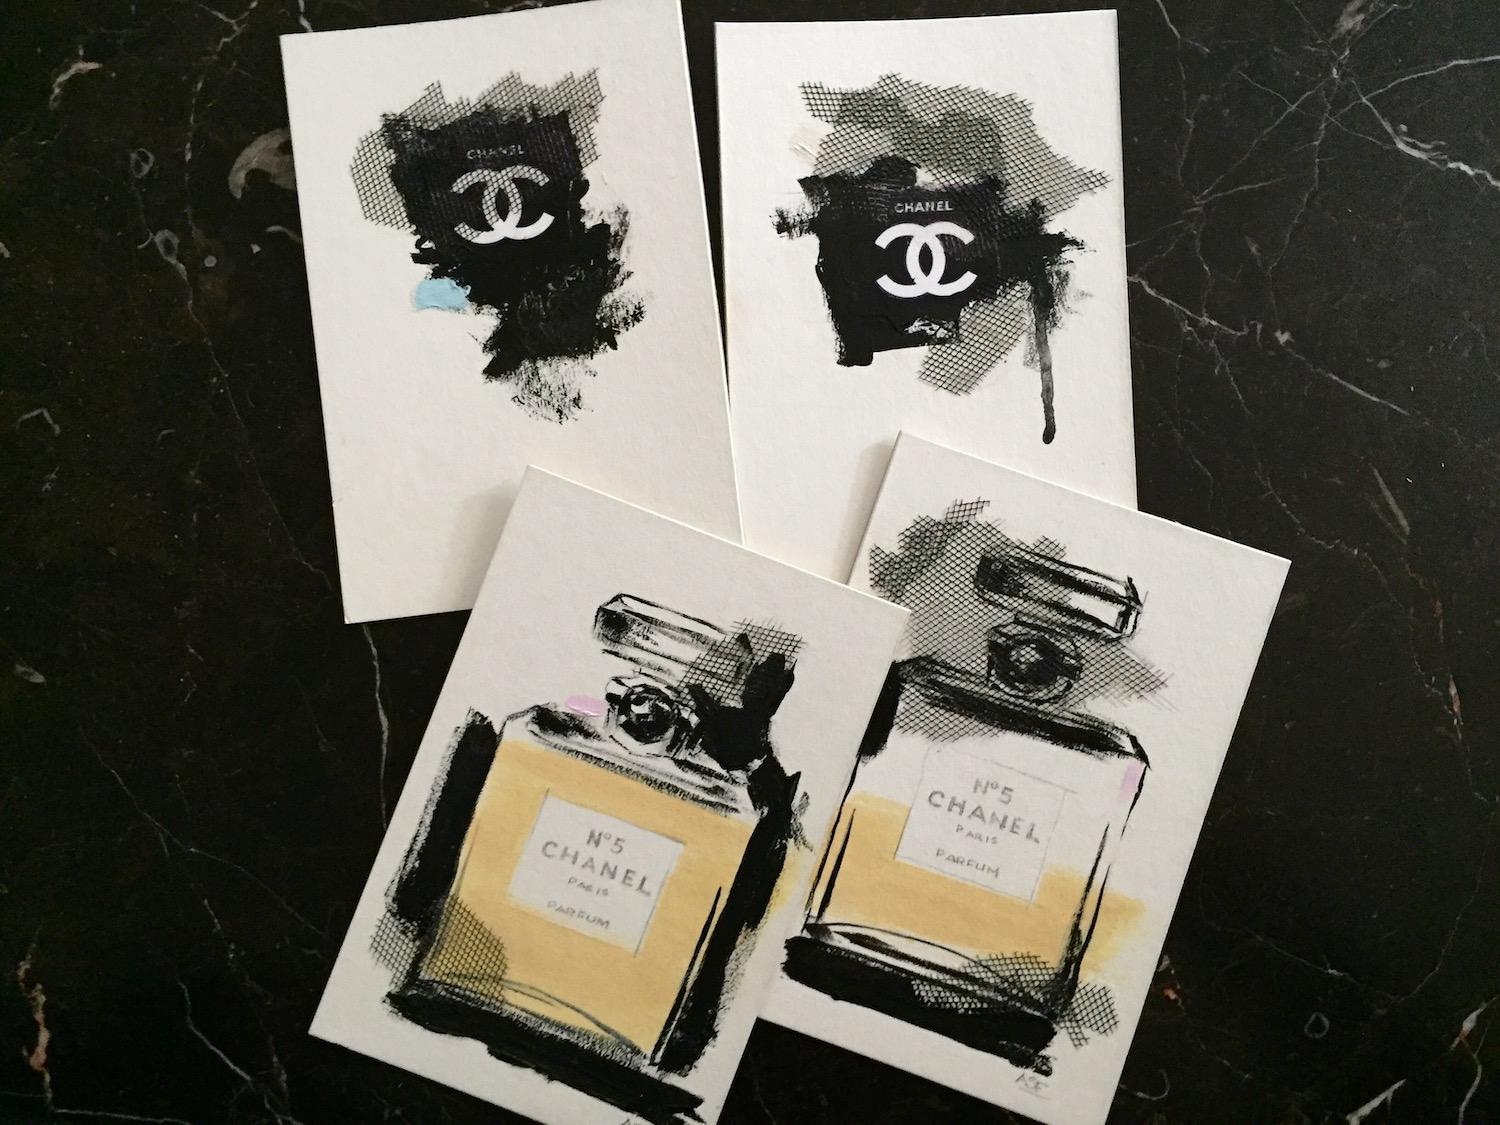 Eine Hommage an das kultige Parfüm Chanel No. 5. Texturierte Elemente verleihen diesem Mixed-Media-Kunstwerk auf Karton visuelles Interesse. Zarte Details ergänzen den Schwarz-Weiß-Kontrast mit einem Hauch von Blassblau. 
(Nummer 4 aus einer Reihe